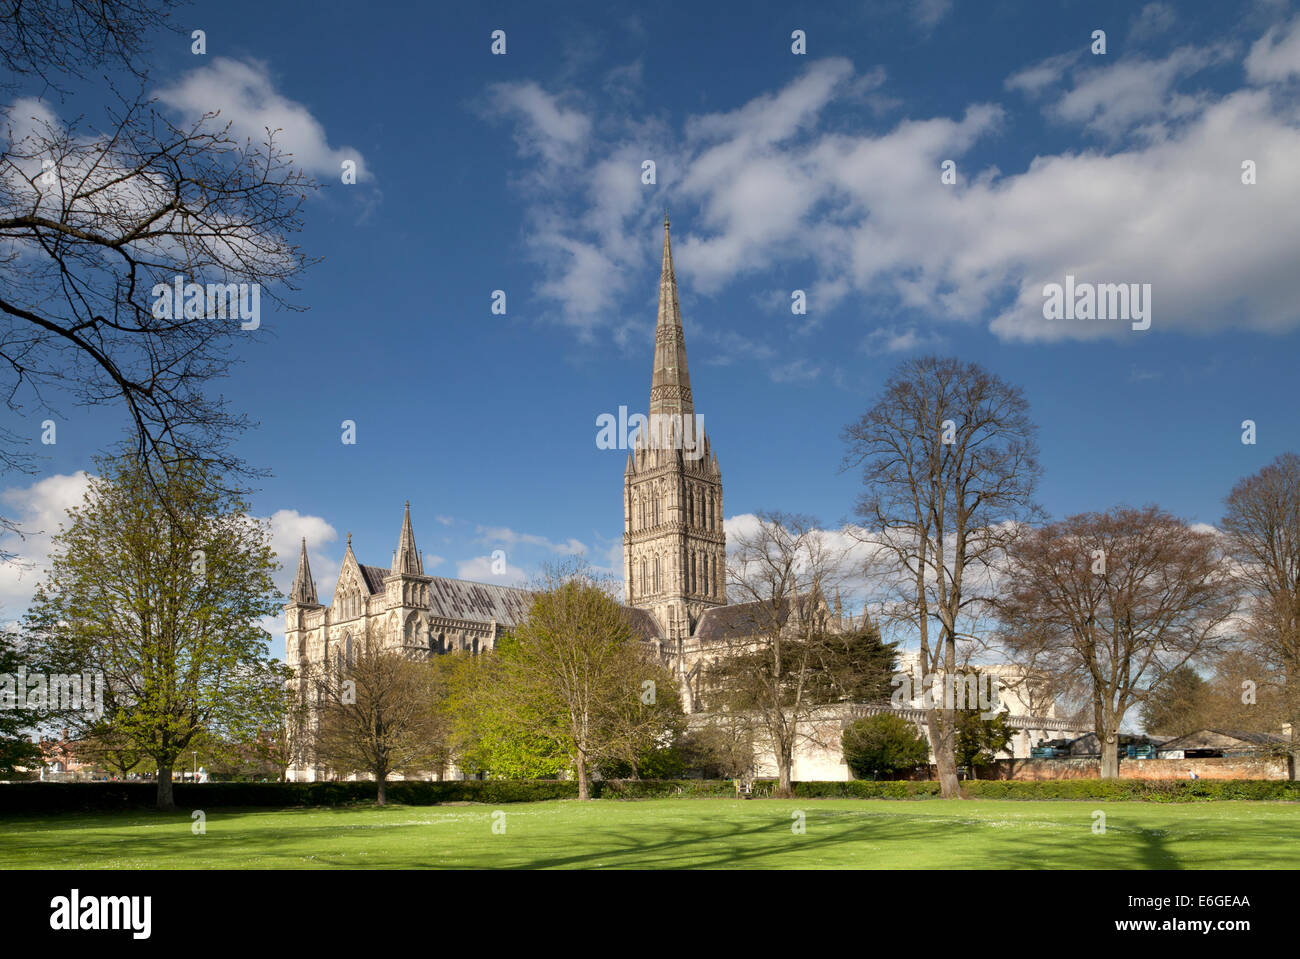 La cathédrale de Salisbury dans le Wiltshire, Angleterre, photographié depuis le sud-ouest à la fin avril. Banque D'Images